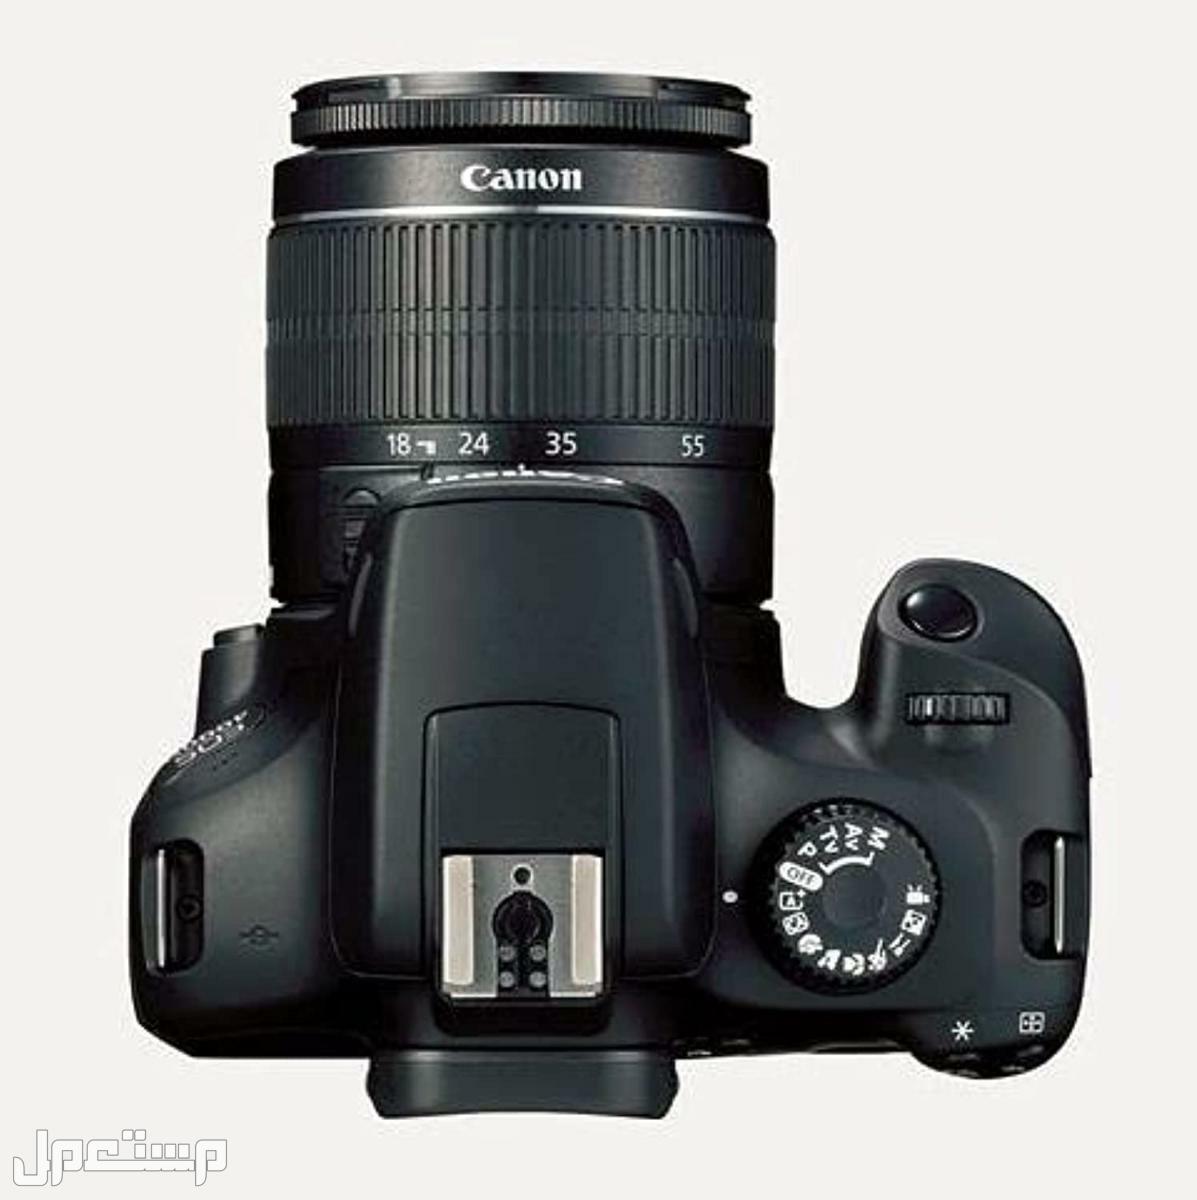 مواصفات وأهم مميزات وأسعار أرخص كاميرا تصوير من كانون في عمان كاميرا كانون  D 4000 بعدسة احادية